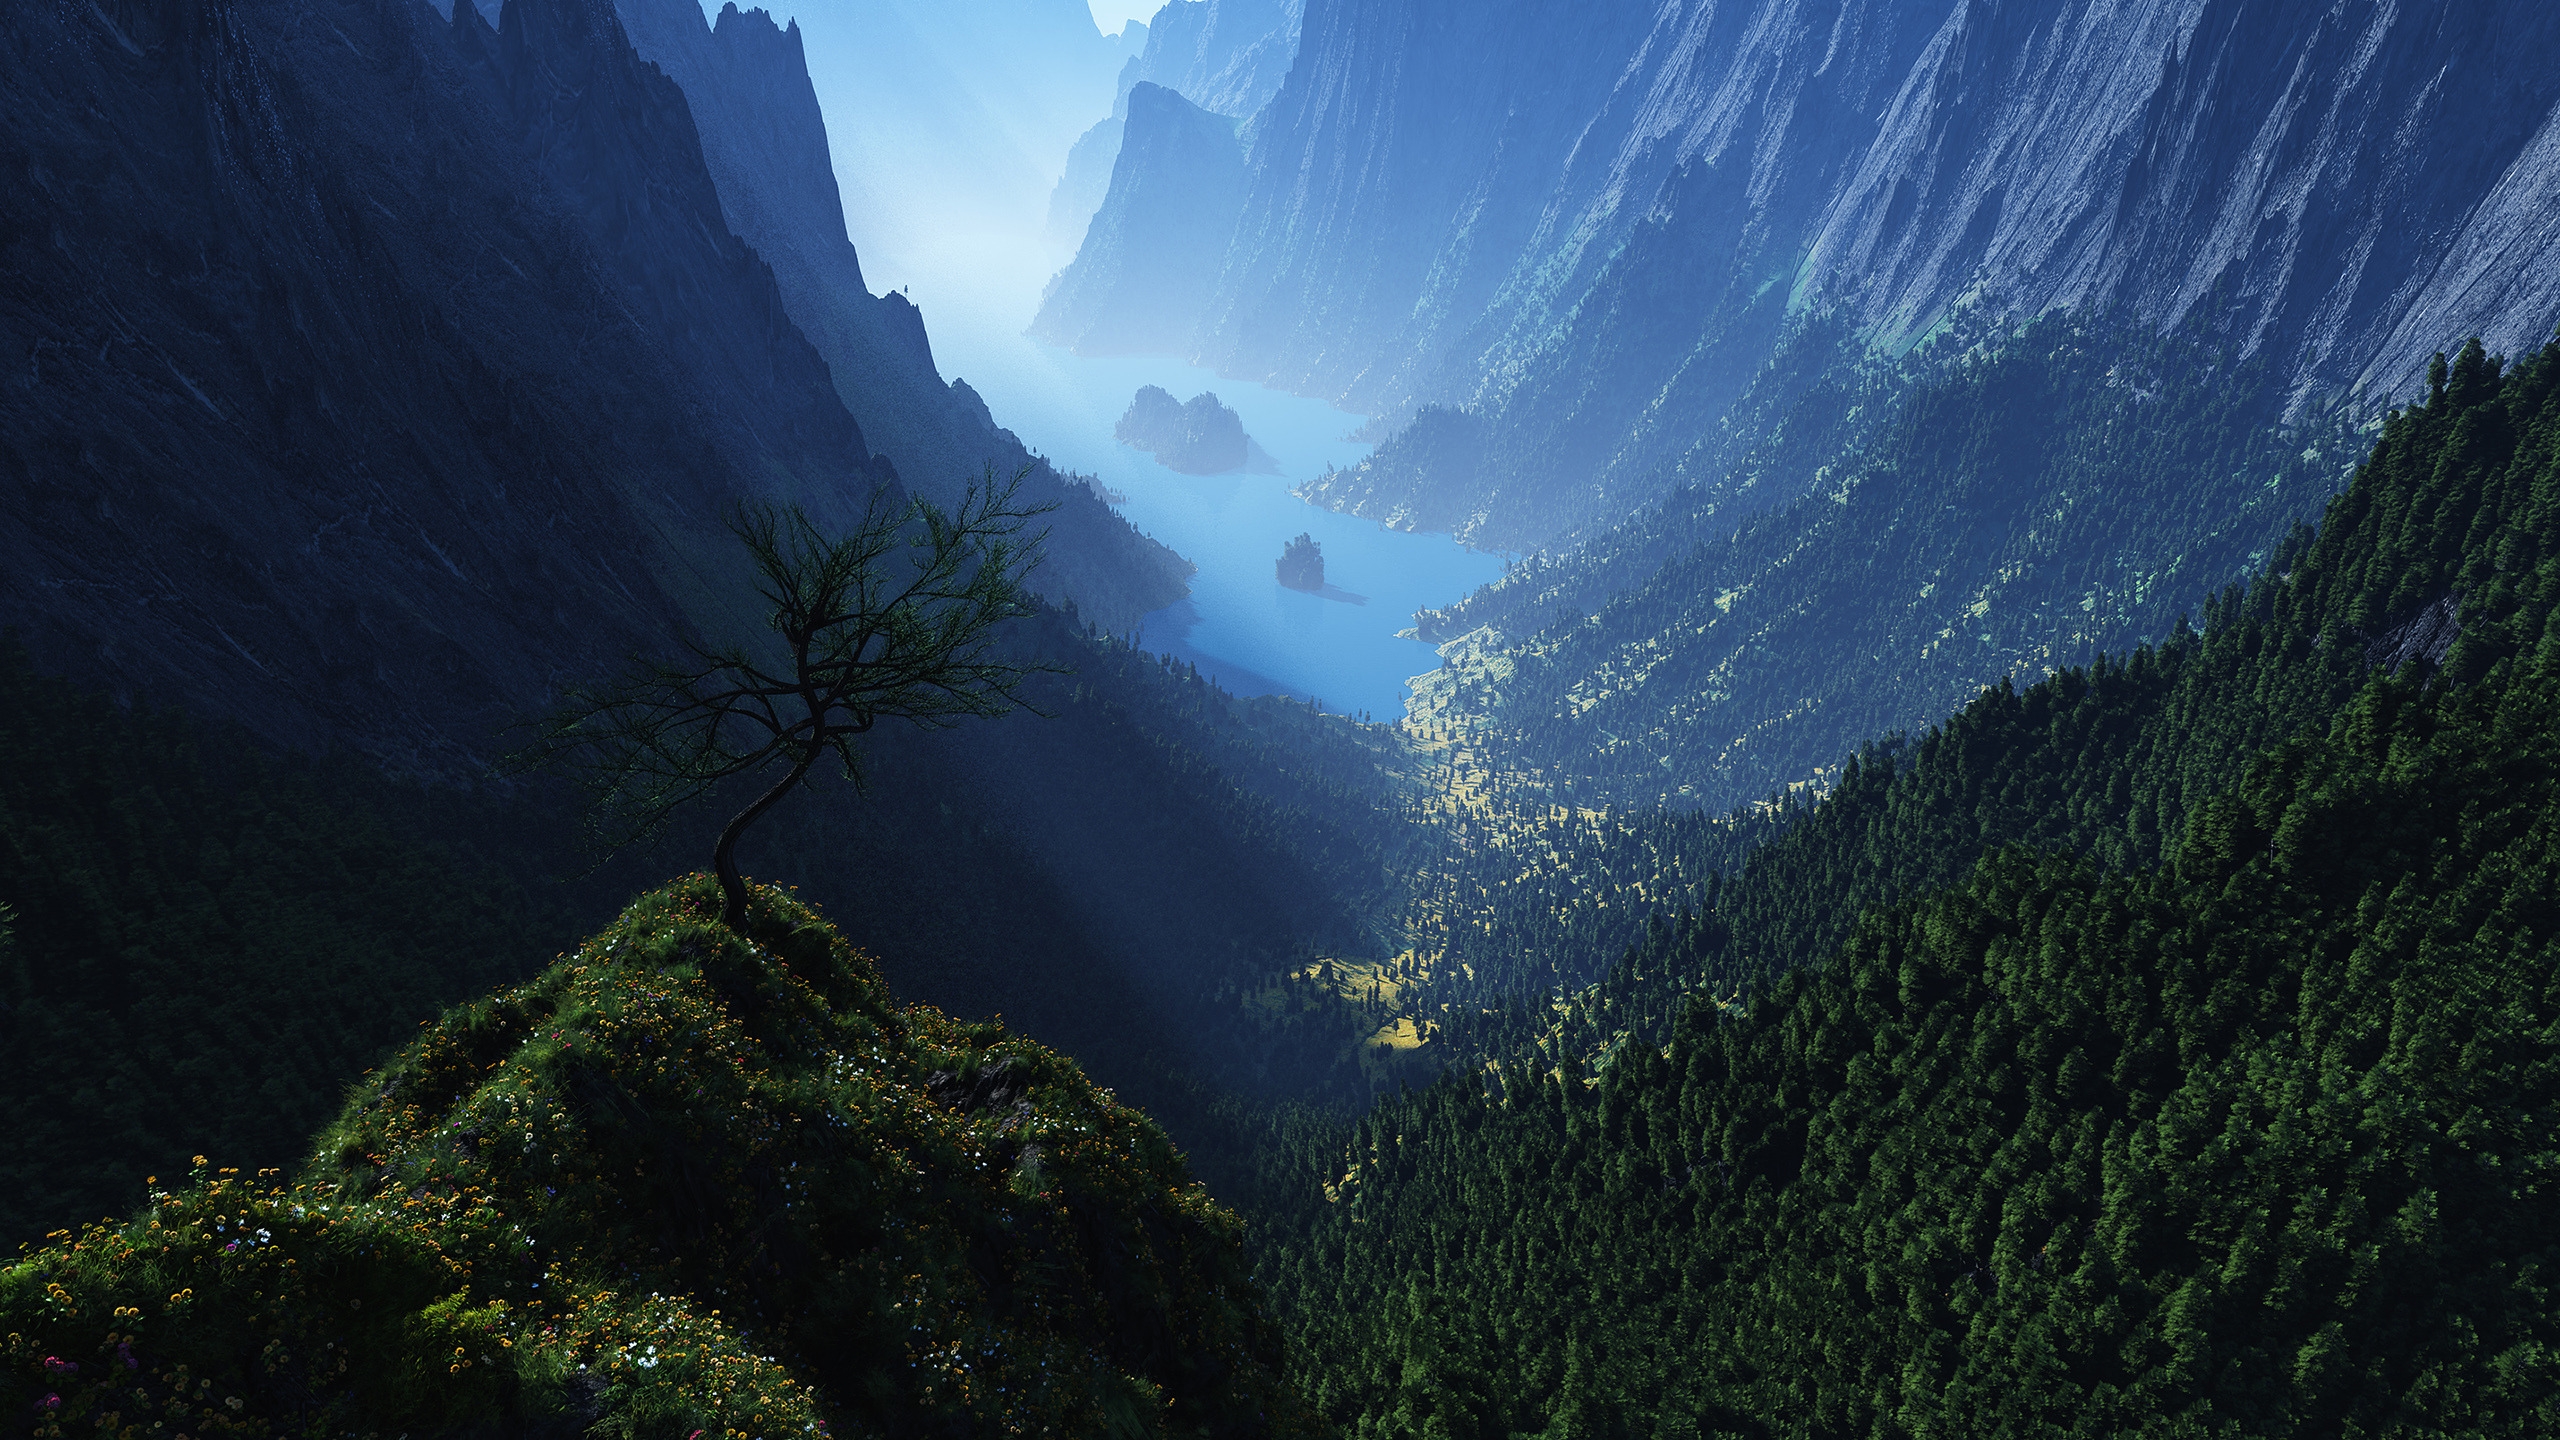 Hình nền cây xanh trên núi vào ban ngày làm bạn cảm thấy tươi mới và thư giãn mỗi khi bạn nhìn vào màn hình máy tính. Hình ảnh của những tán cây rợp trời vào ban ngày mang lại sự yên tĩnh và thanh thản cho tâm hồn bạn. Nếu bạn muốn thấy một chút thiên nhiên, hình nền này sẽ là sự lựa chọn hoàn hảo.